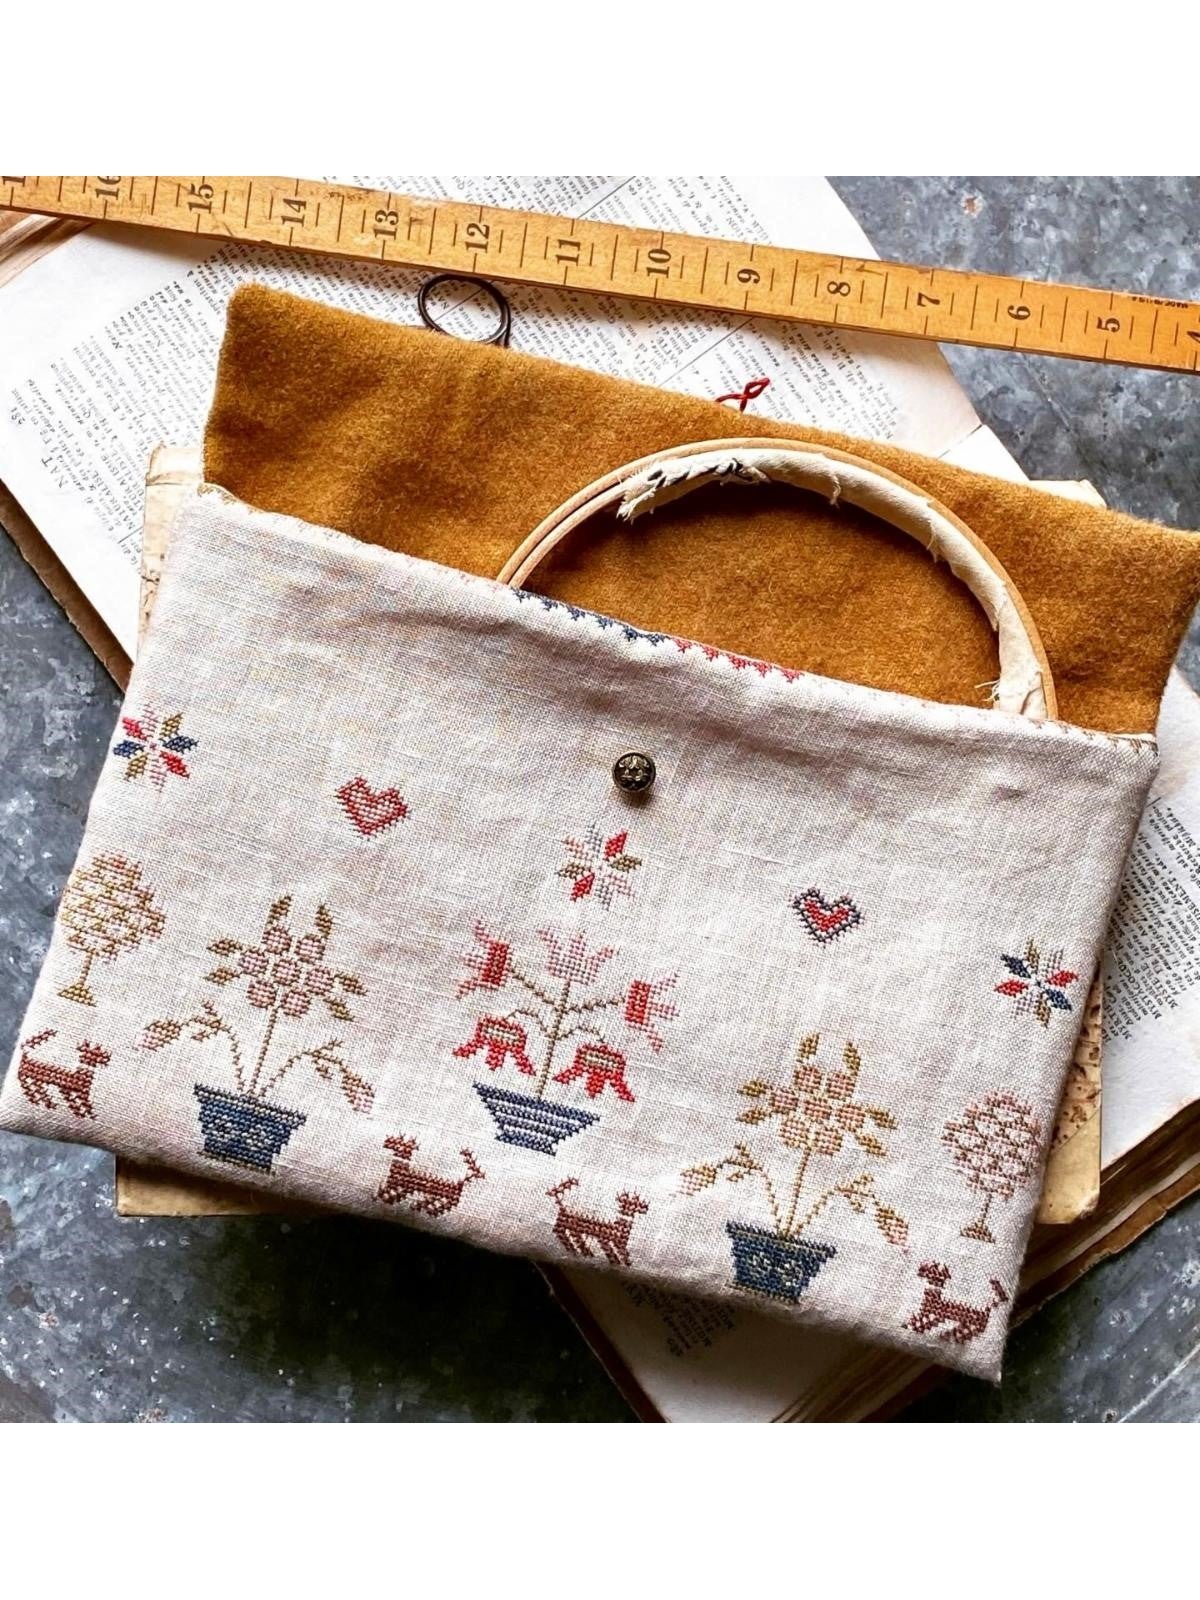 Stacy Nash Designs- Caroline's Sampler and Sewing Bag